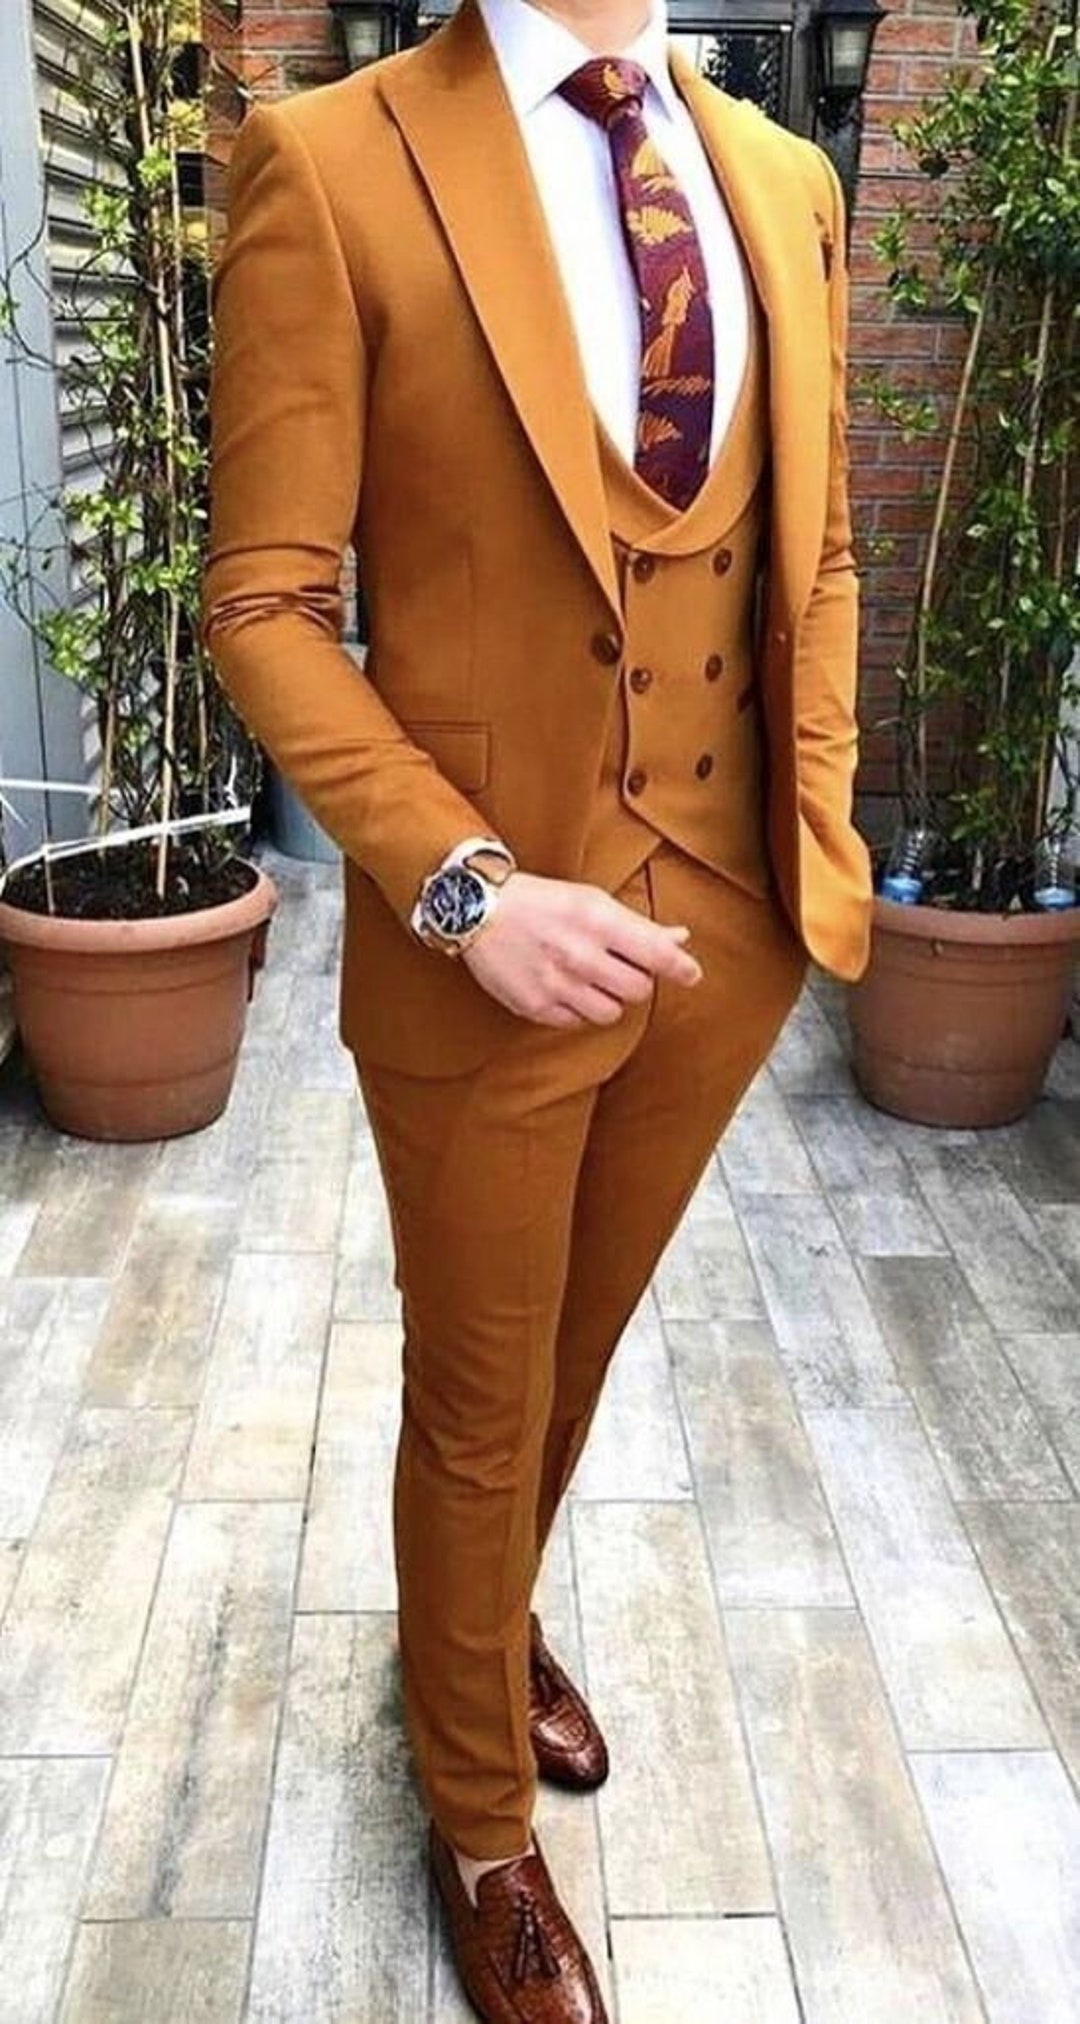 Buy FINEST YELLOW SUIT Men, Men Suit 3 Piece Yellow, Groom Wedding Suit, Men  Suit Yellow, Yellow Dinner Suit Men, Men Prom Suit Yellow, Men Suit Online  in India - Etsy